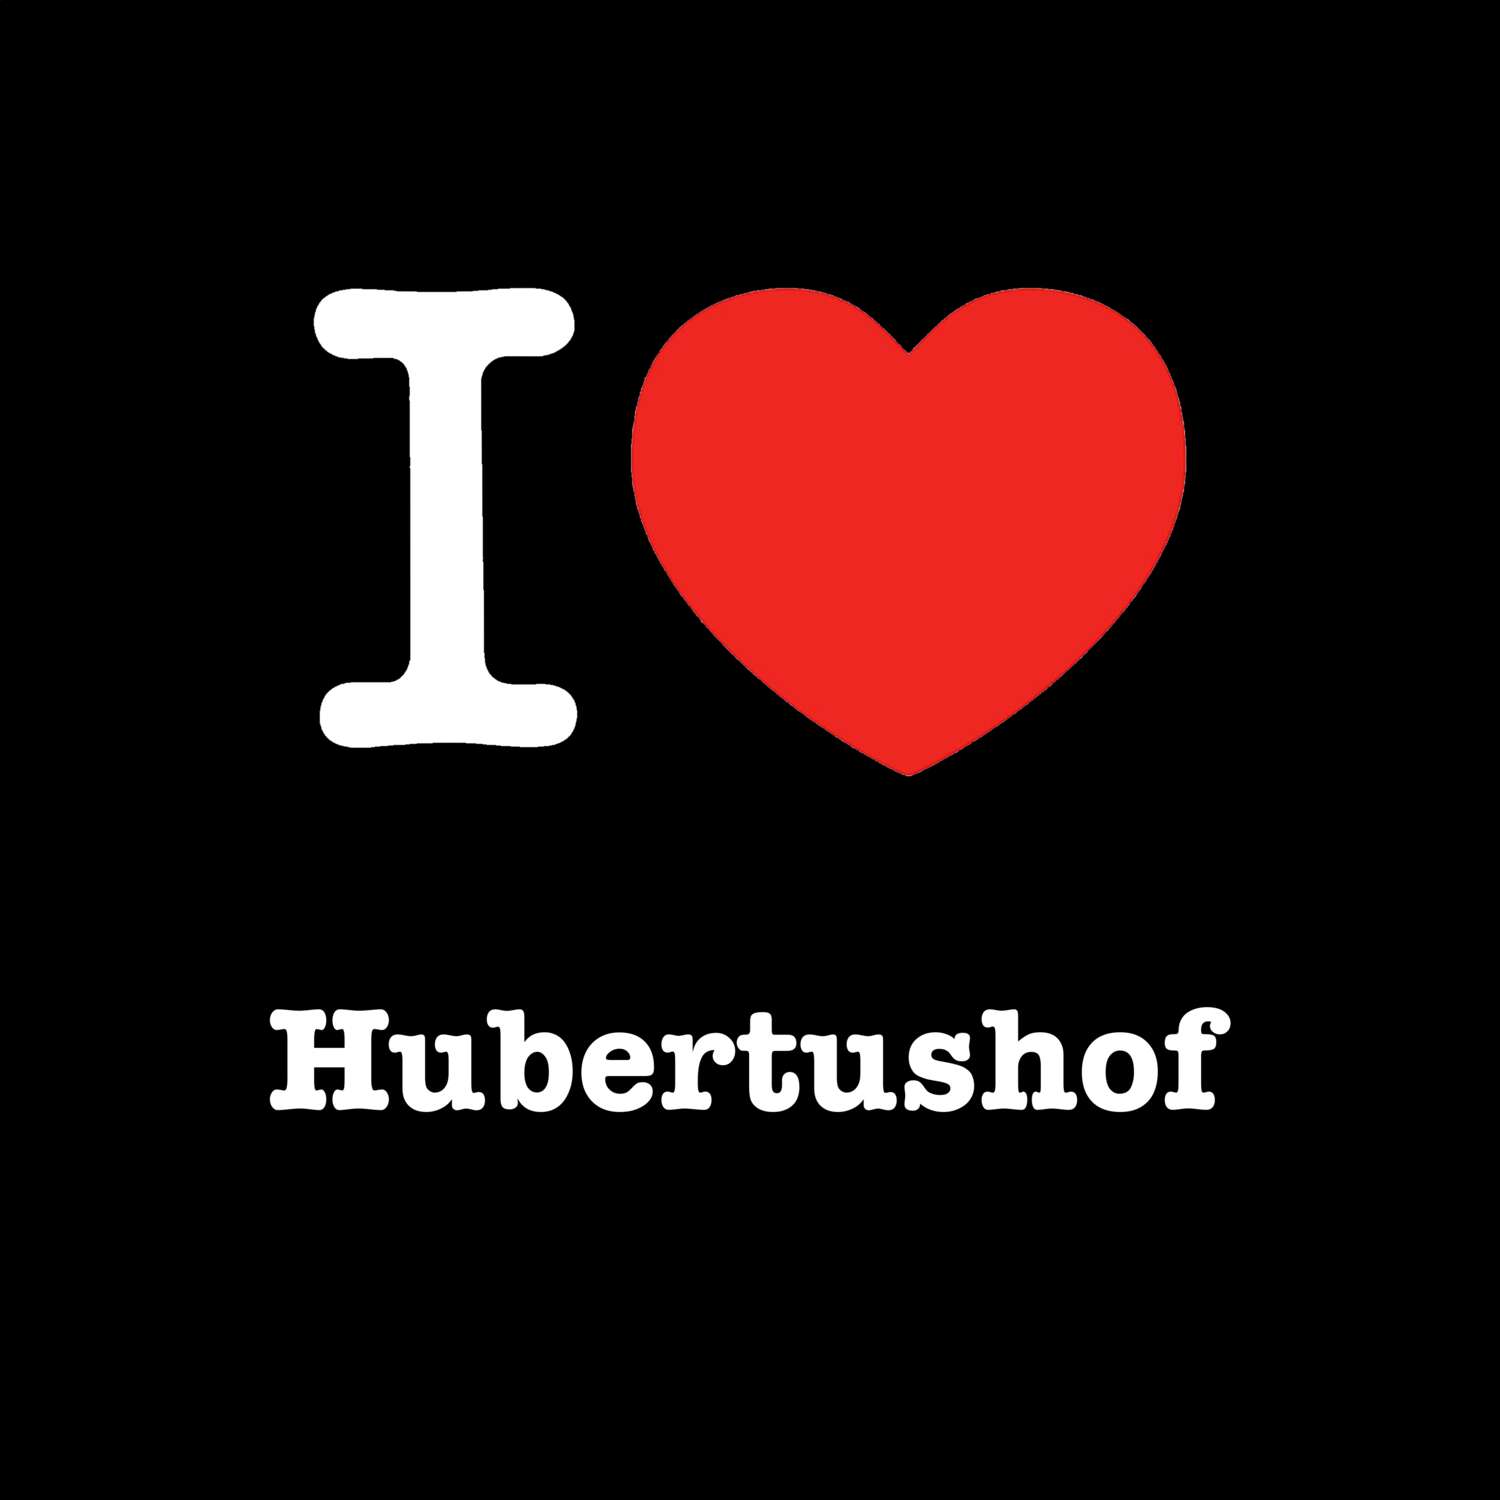 Hubertushof T-Shirt »I love«